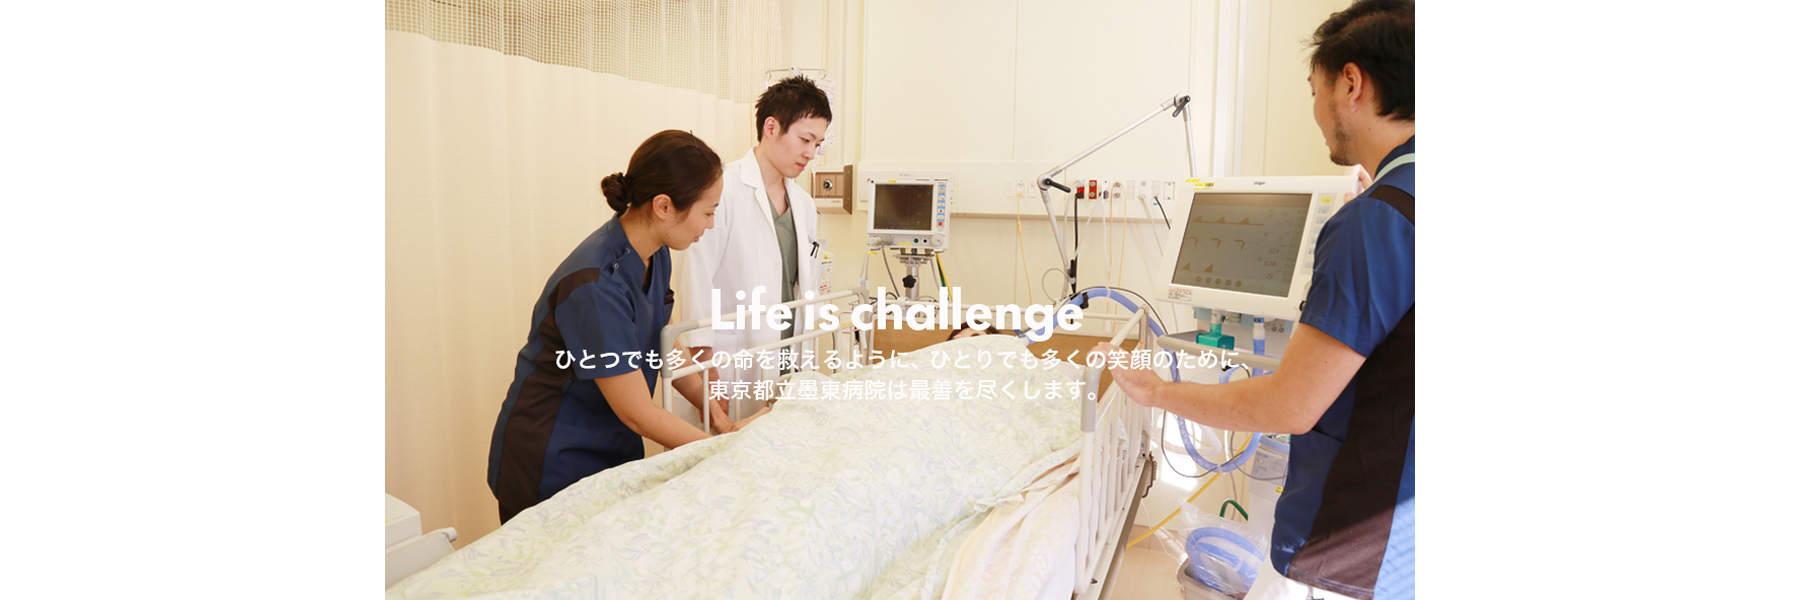 Life is challenge　ひとつでも多くの命を救えるように、ひとりでも多くの笑顔のために、東京都立墨東病院は最善を尽くします。